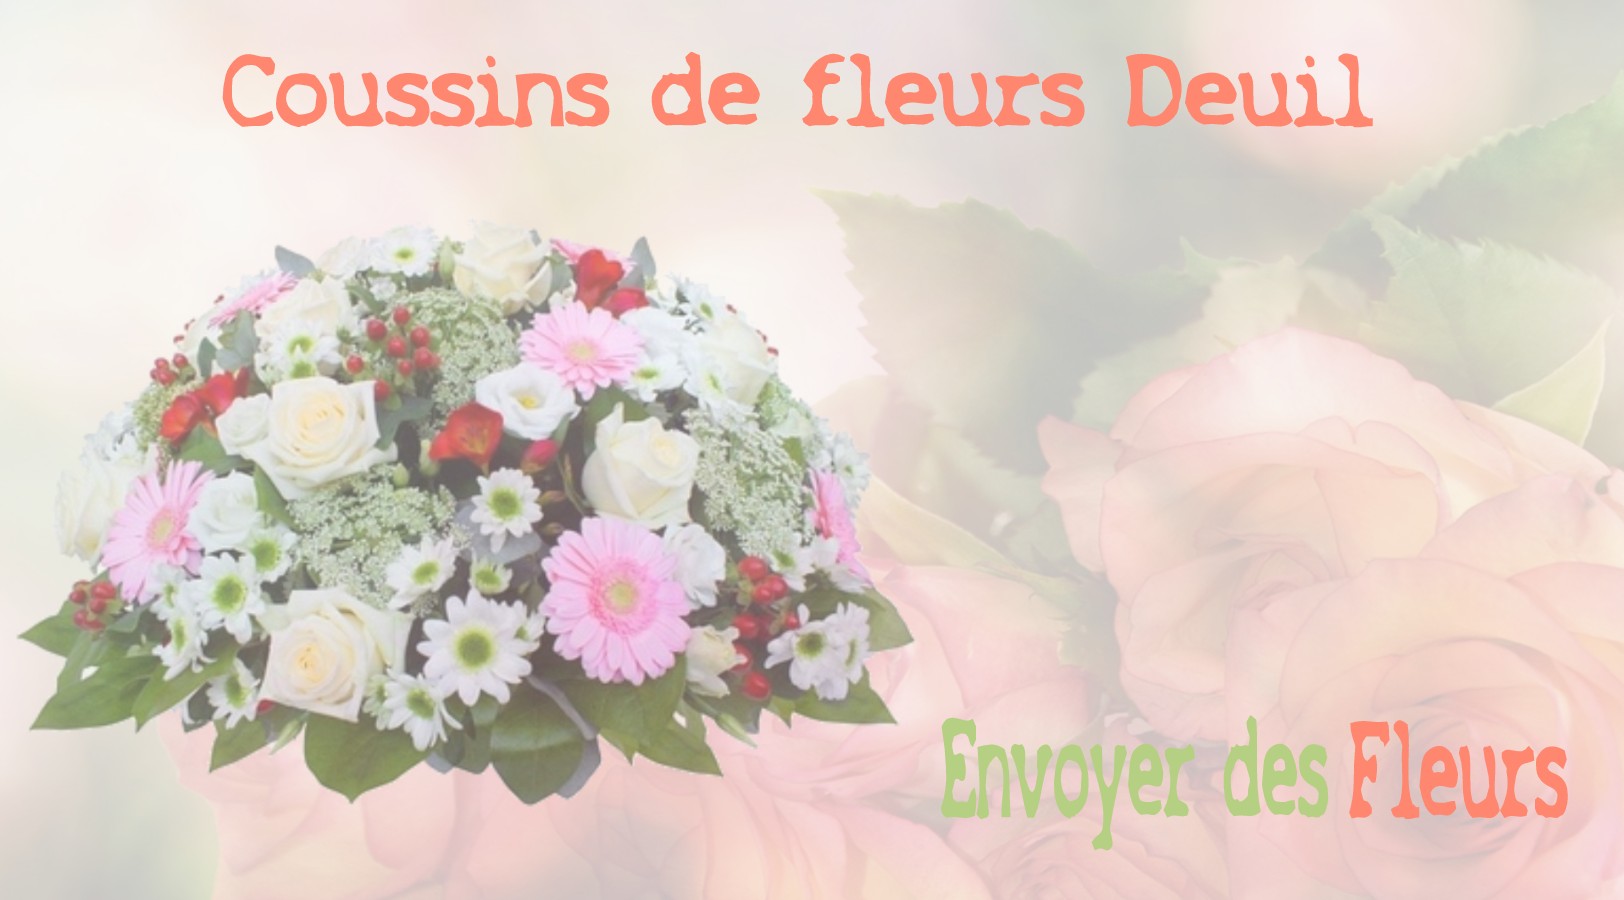 Les coussins de fleurs deuil - LIVRAISON FLEURS DEUIL A BOUTIGNY 77